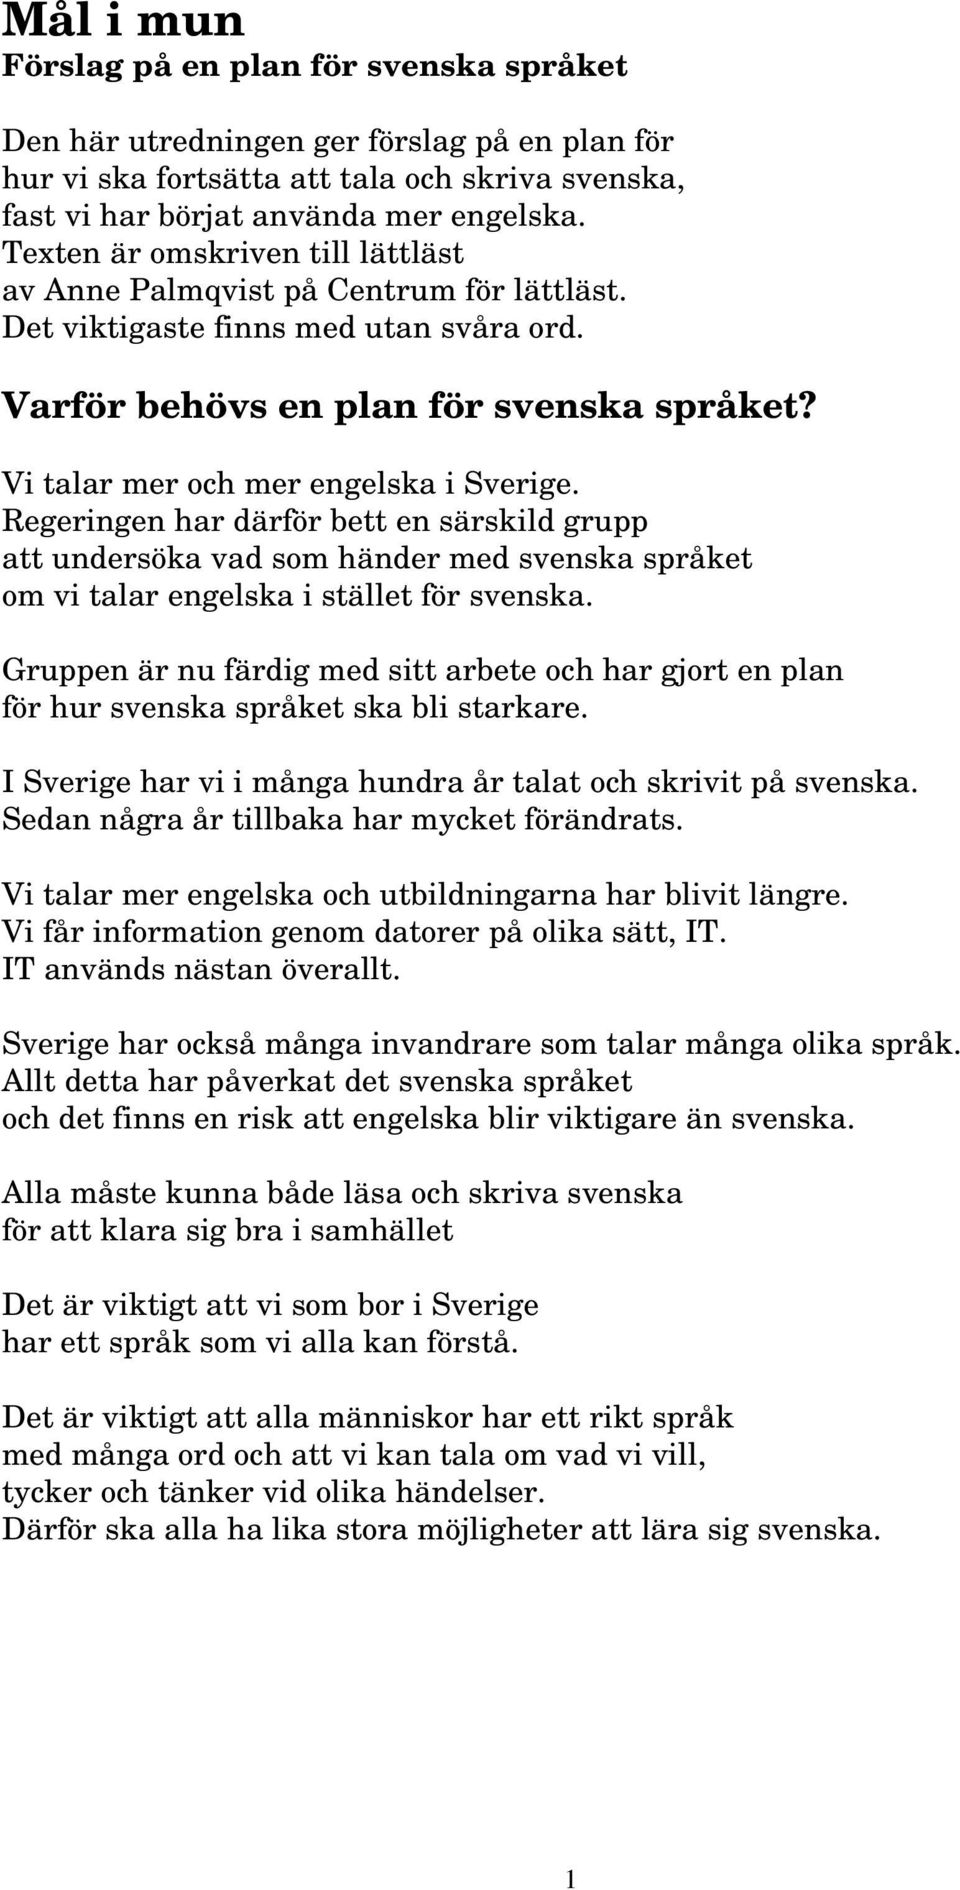 Vi talar mer och mer engelska i Sverige. Regeringen har därför bett en särskild grupp att undersöka vad som händer med svenska språket om vi talar engelska i stället för svenska.